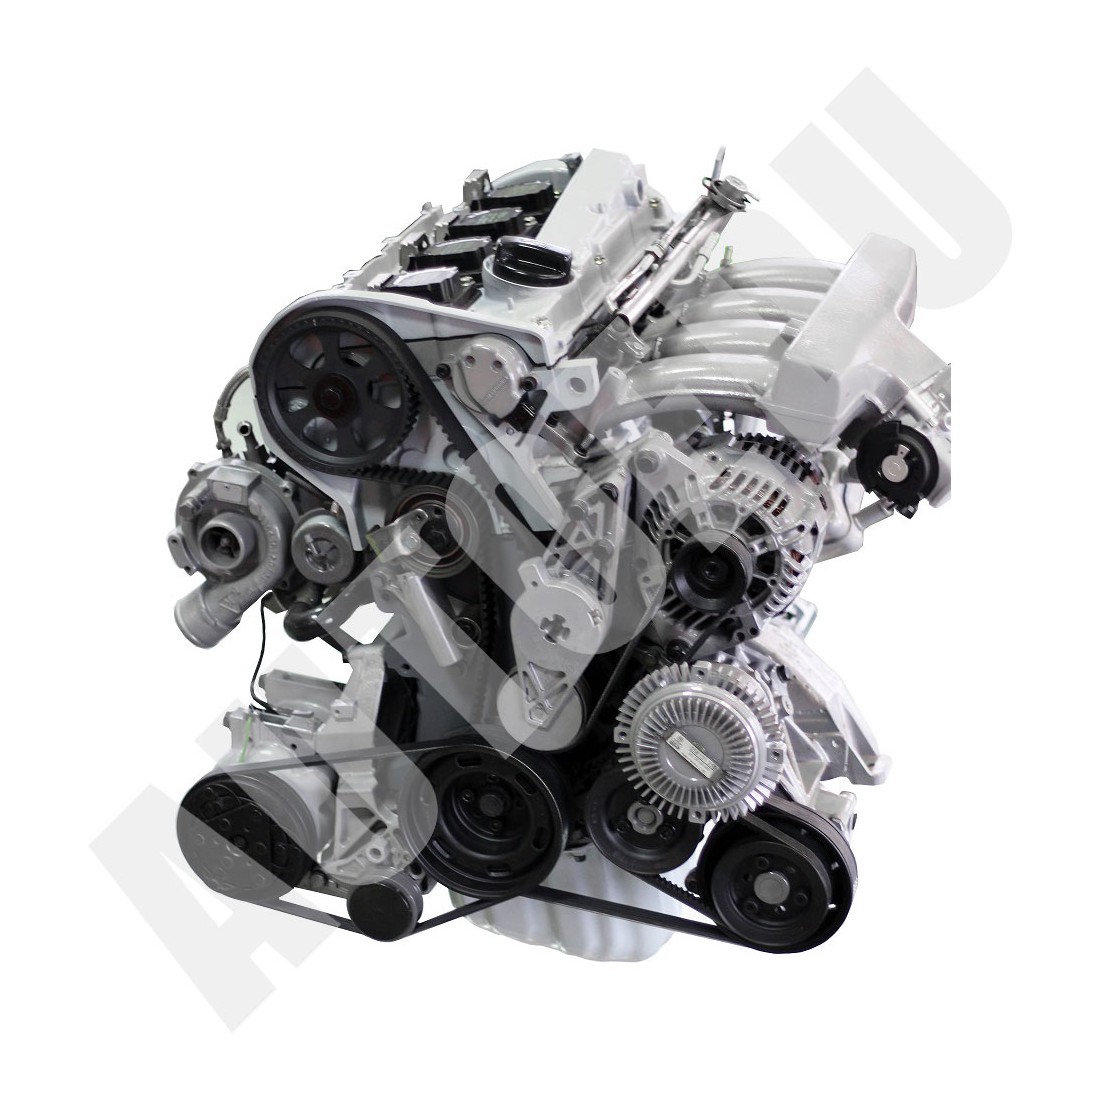 Benzininis MPI variklis, skirtas išmontavimui ir surinkimui VIVV1-ADR AutoEDU